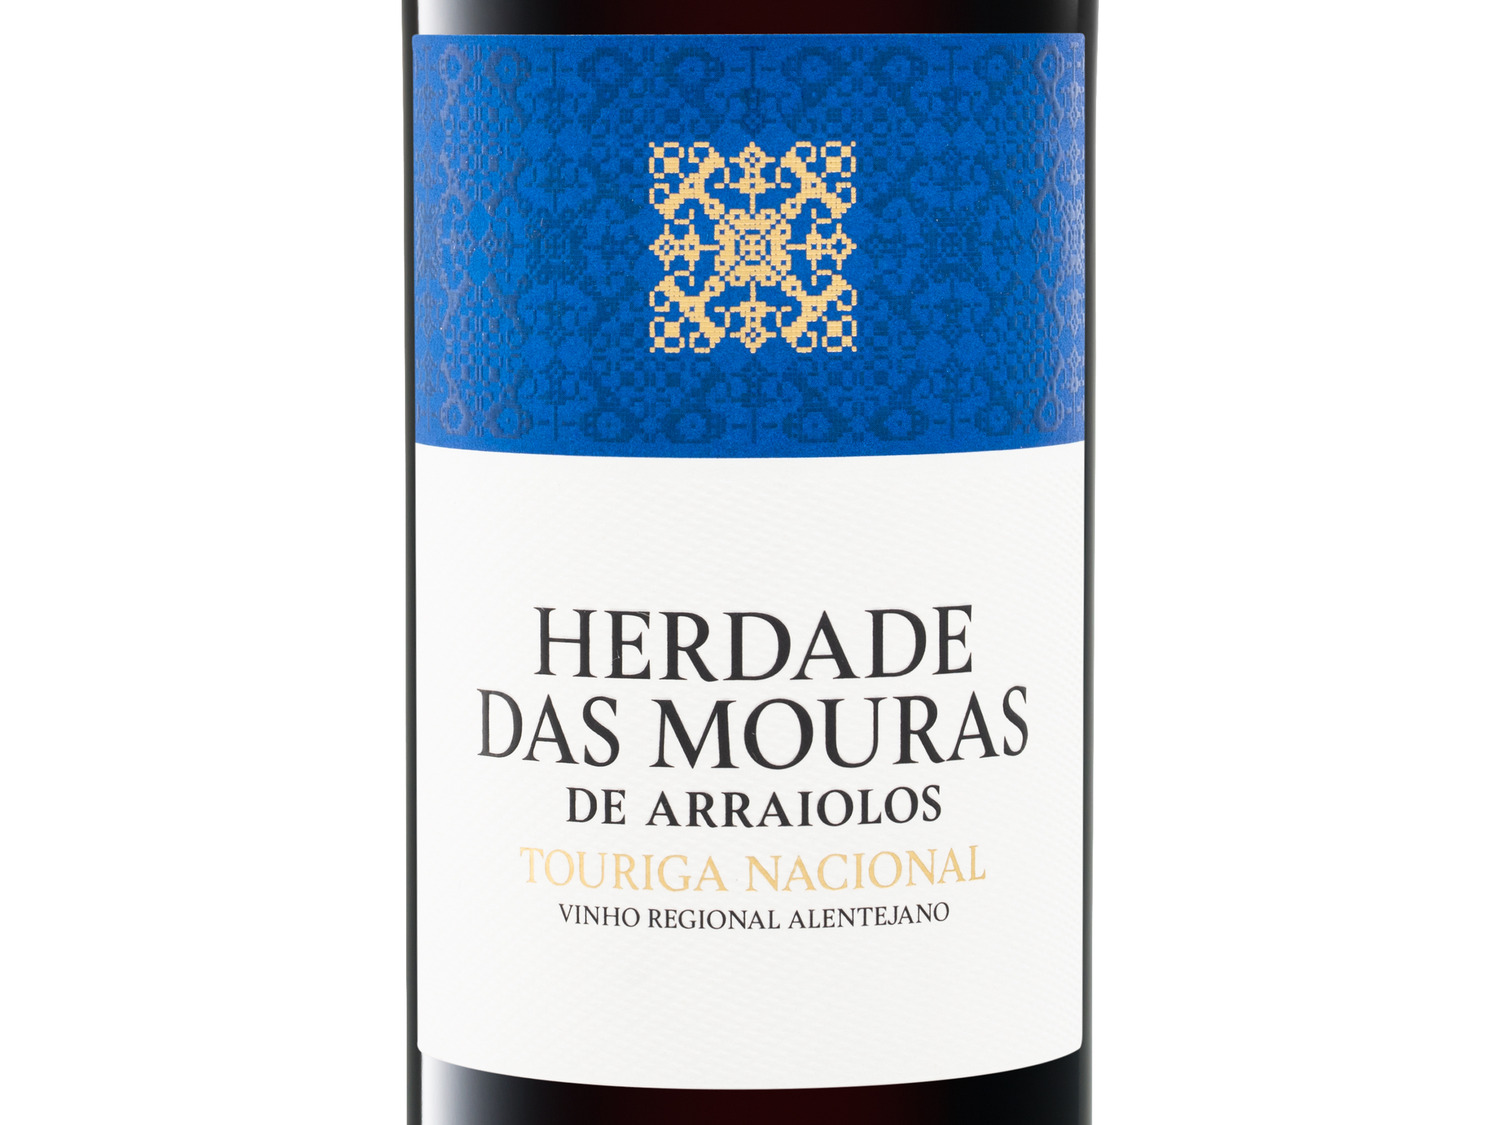 Herdade … Regional trocken, Vinho Alentejano Mouras das